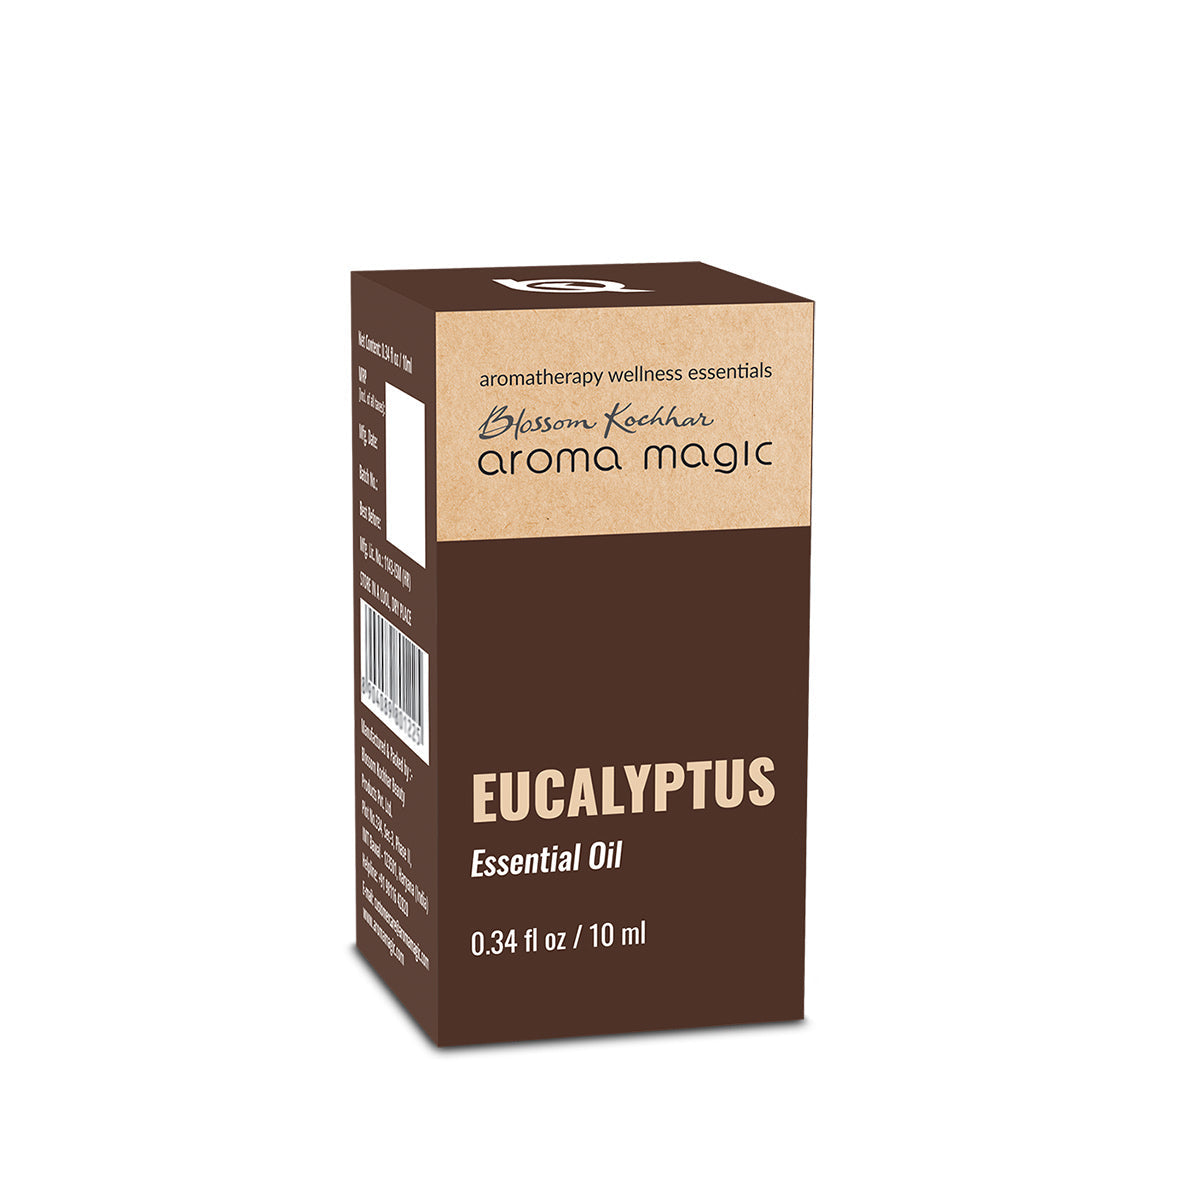 Eucalyptus Essential Oil - Aroma Magic